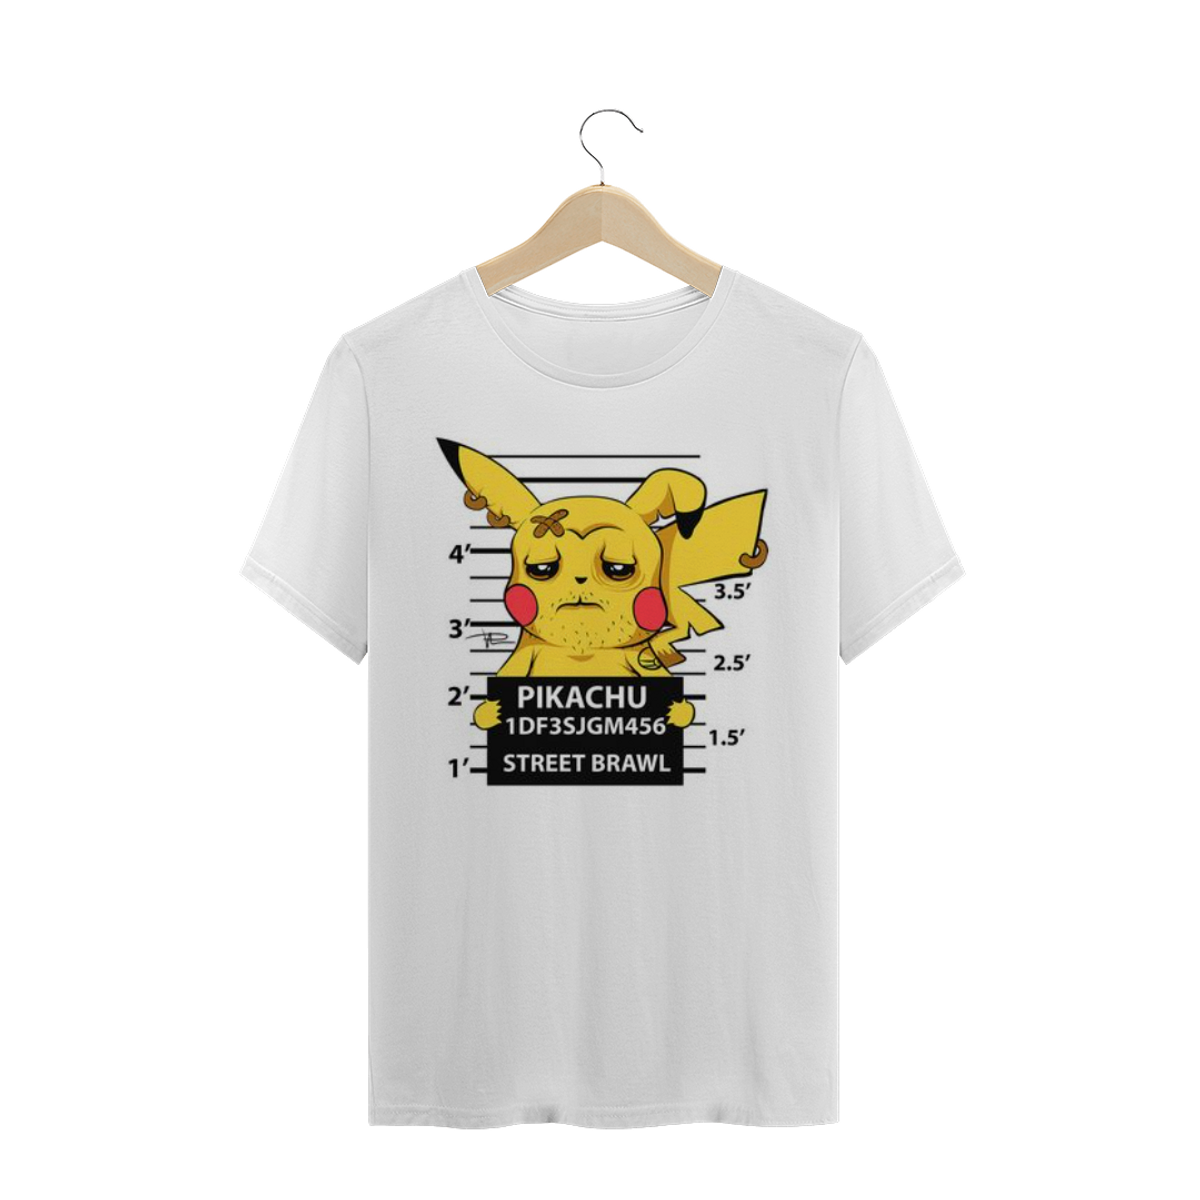 Nome do produto: Pikachu